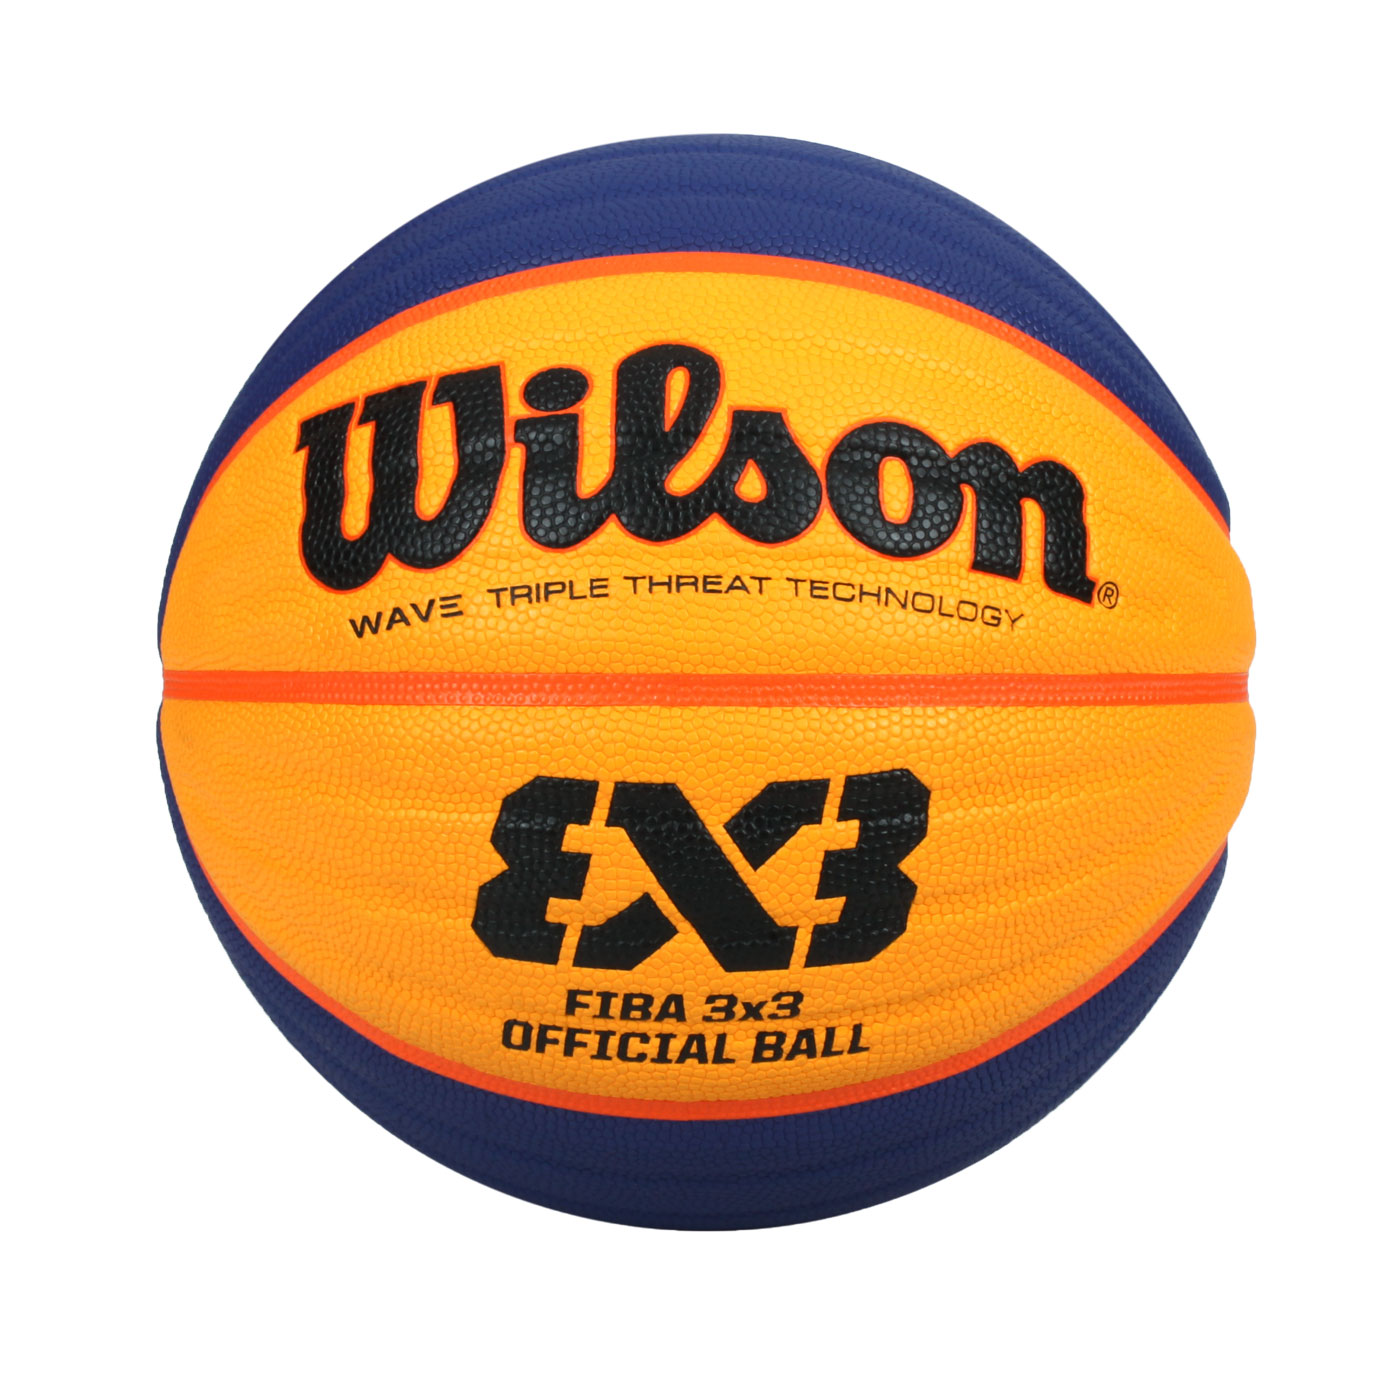 WILSON FIBA 3x3國際賽指定用球籃球 WTB0533XB - 黃藍黑